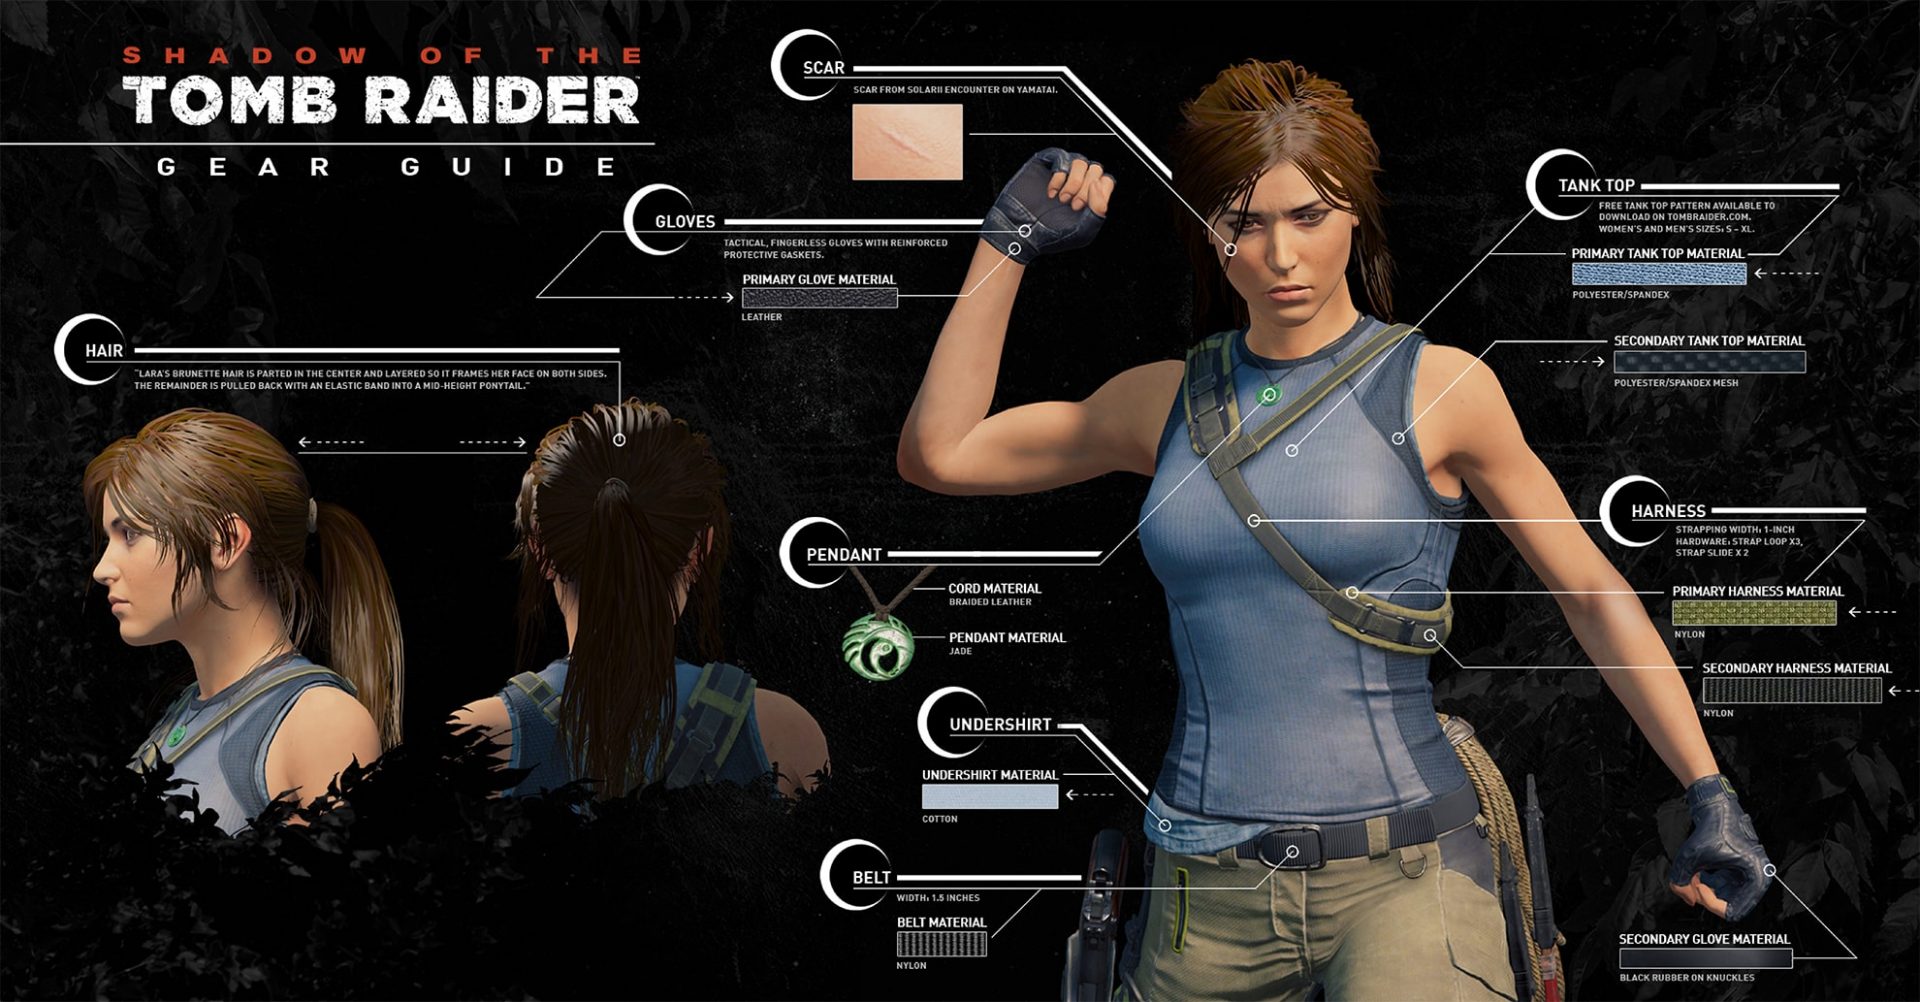 Descubre las armas y equipo que utilizará Lara Croft en Shadow of the Tomb Raider